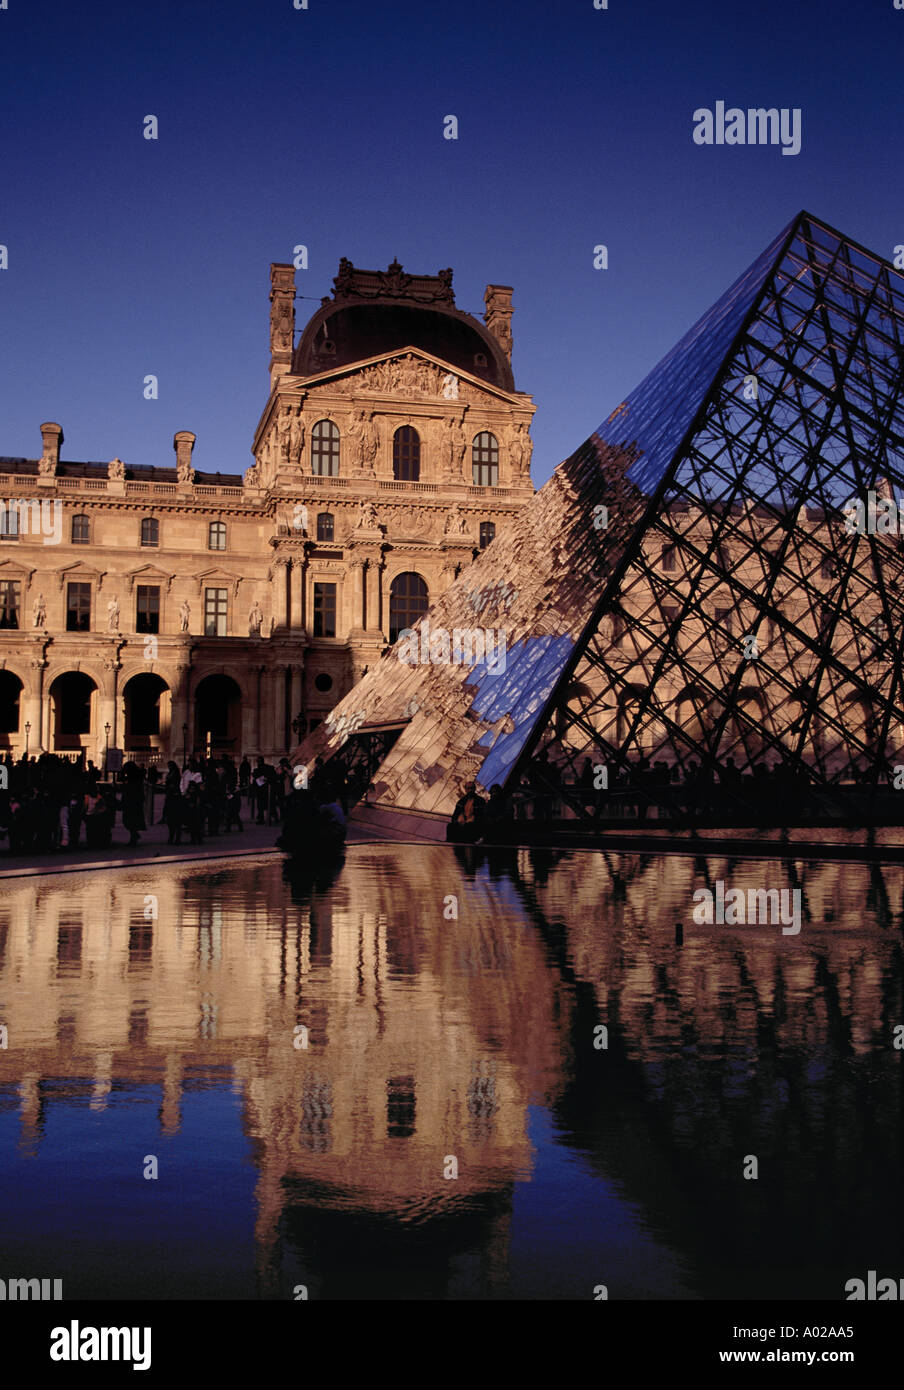 Francia, Parigi, Museo del Louvre (Musee du Louvre), piramide in vetro Foto Stock